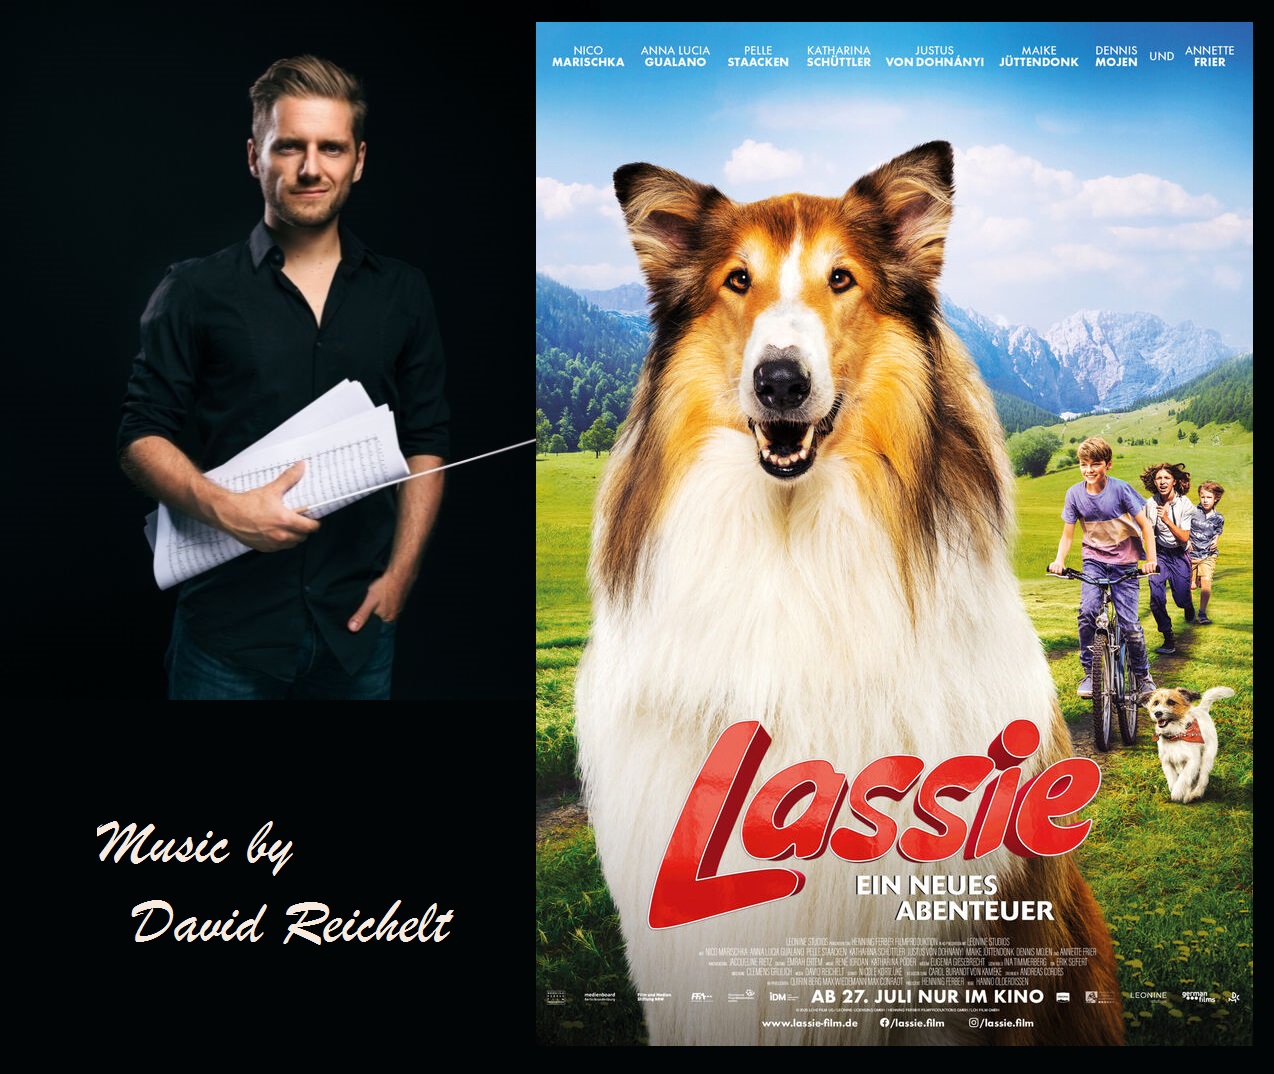 Lassie  A New Adventure (Lassie  Ein neues Abenteuer)